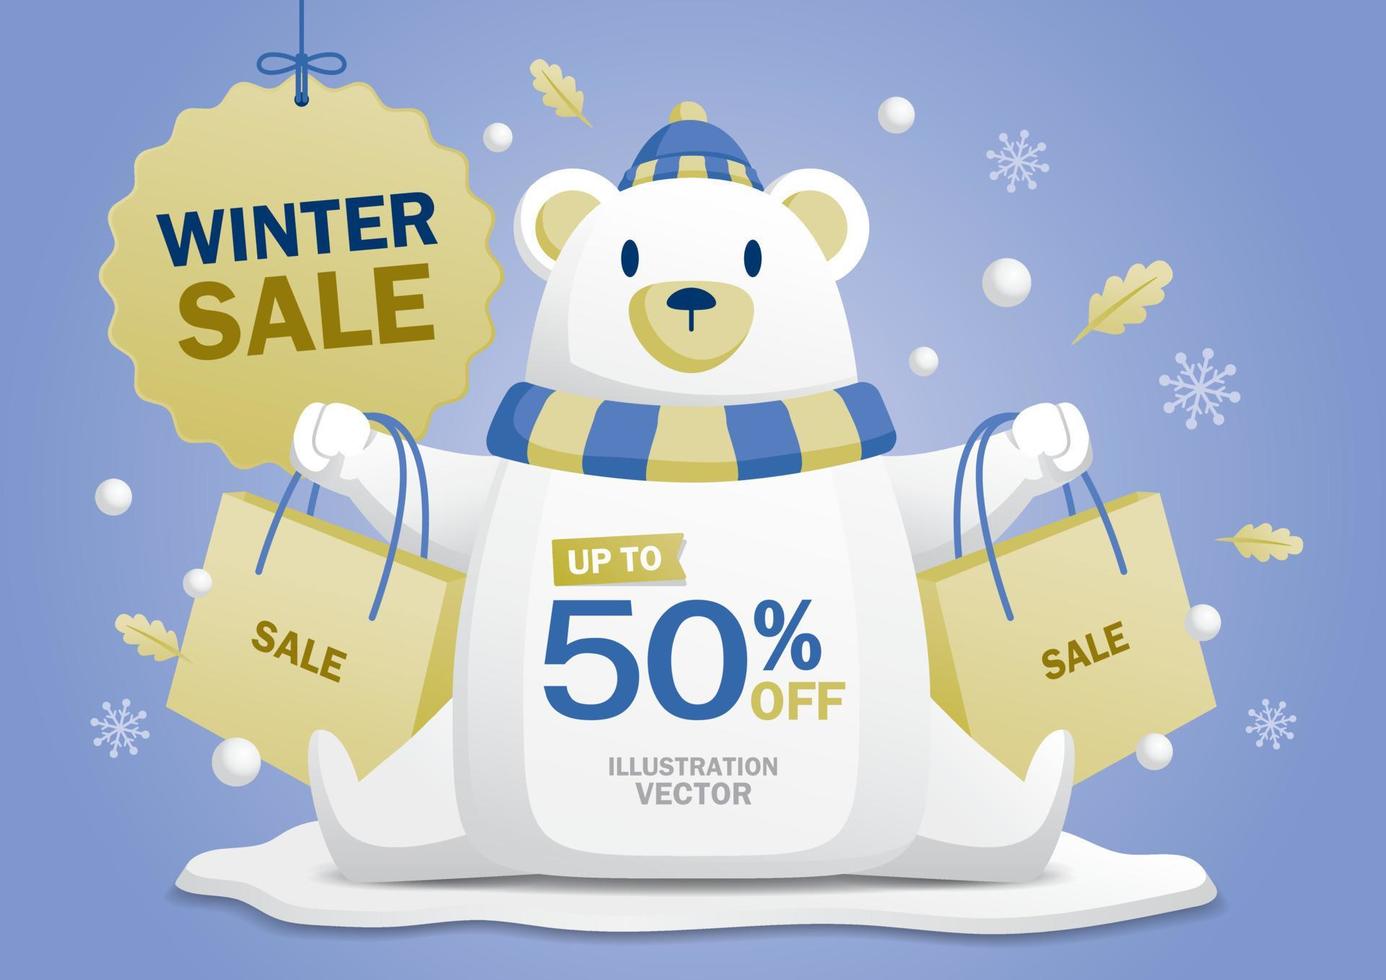 un lindo oso blanco presenta la promoción de invierno. vector de banner gráfico de invierno.